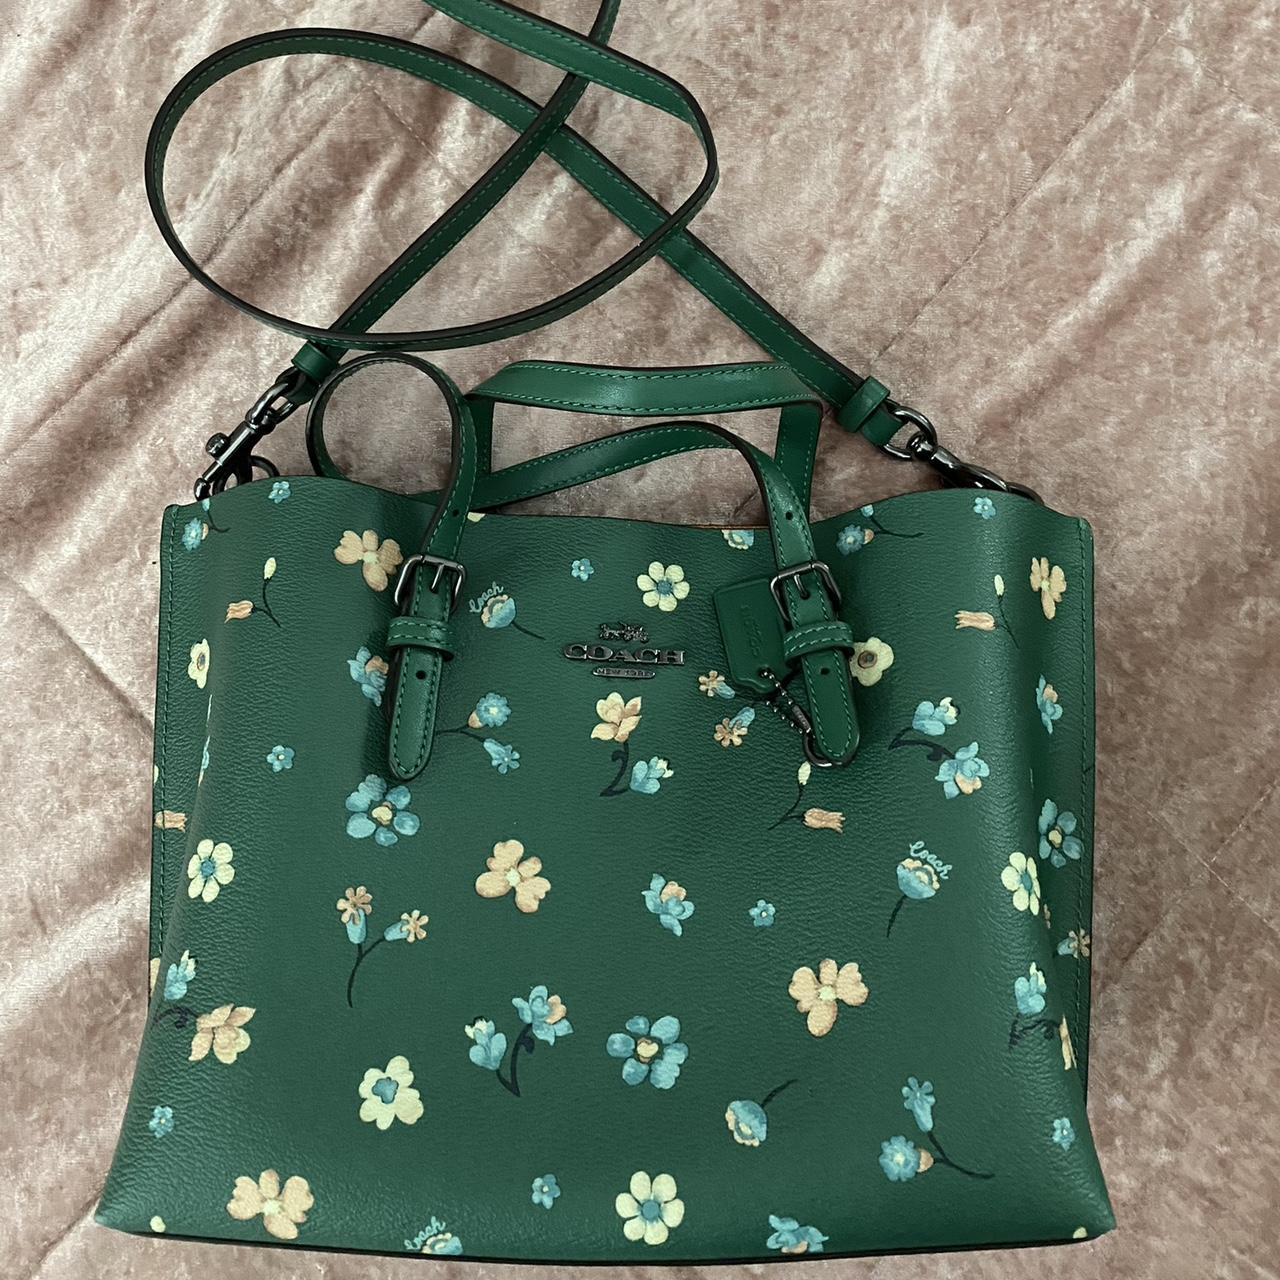 Coach Penelope OP Art green satchel bag purse L0882 13532 | eBay